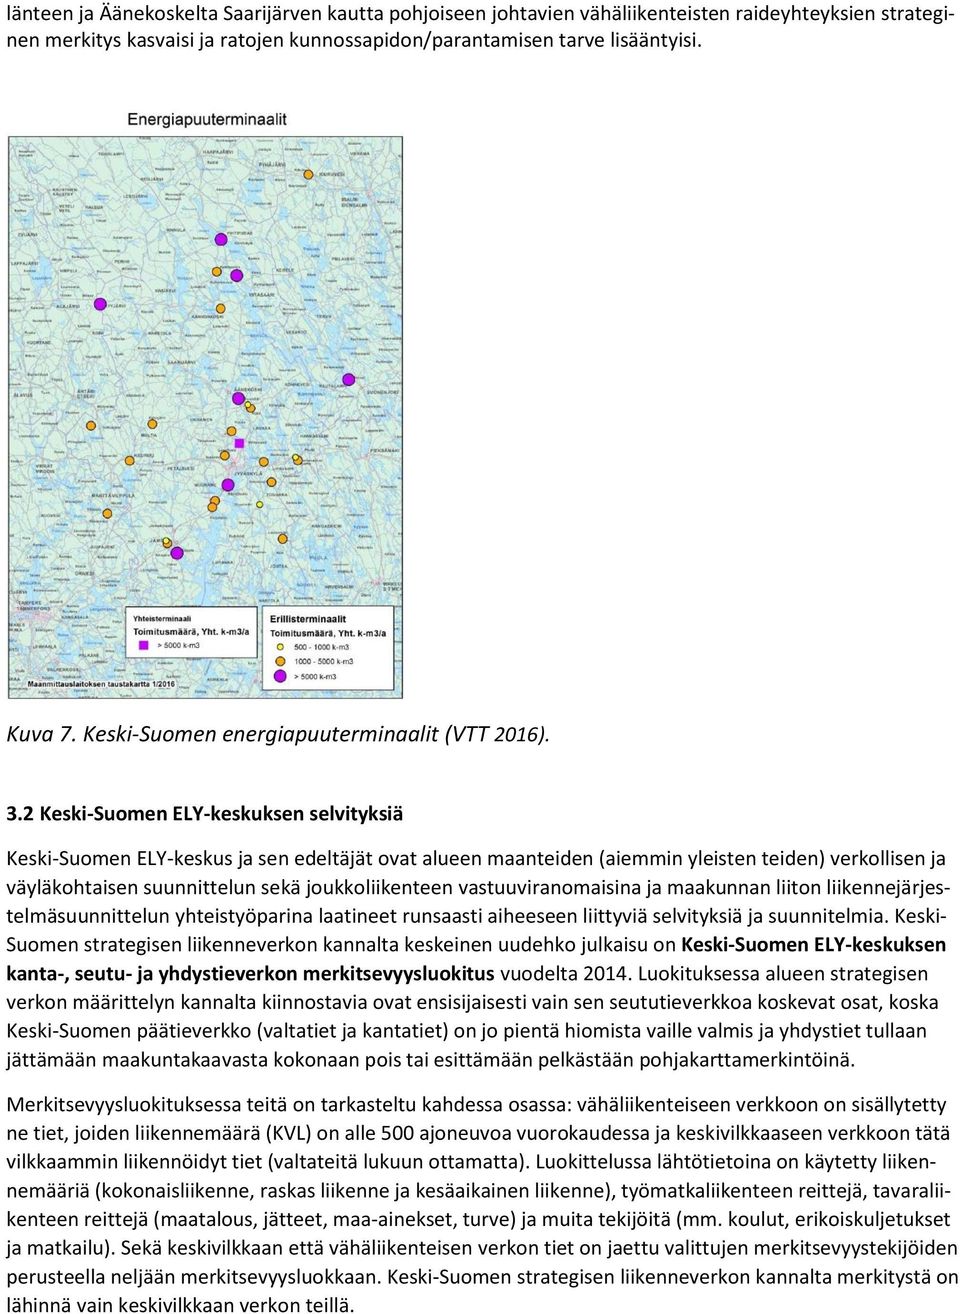 2 Keski-Suomen ELY-keskuksen selvityksiä Keski-Suomen ELY-keskus ja sen edeltäjät ovat alueen maanteiden (aiemmin yleisten teiden) verkollisen ja väyläkohtaisen suunnittelun sekä joukkoliikenteen